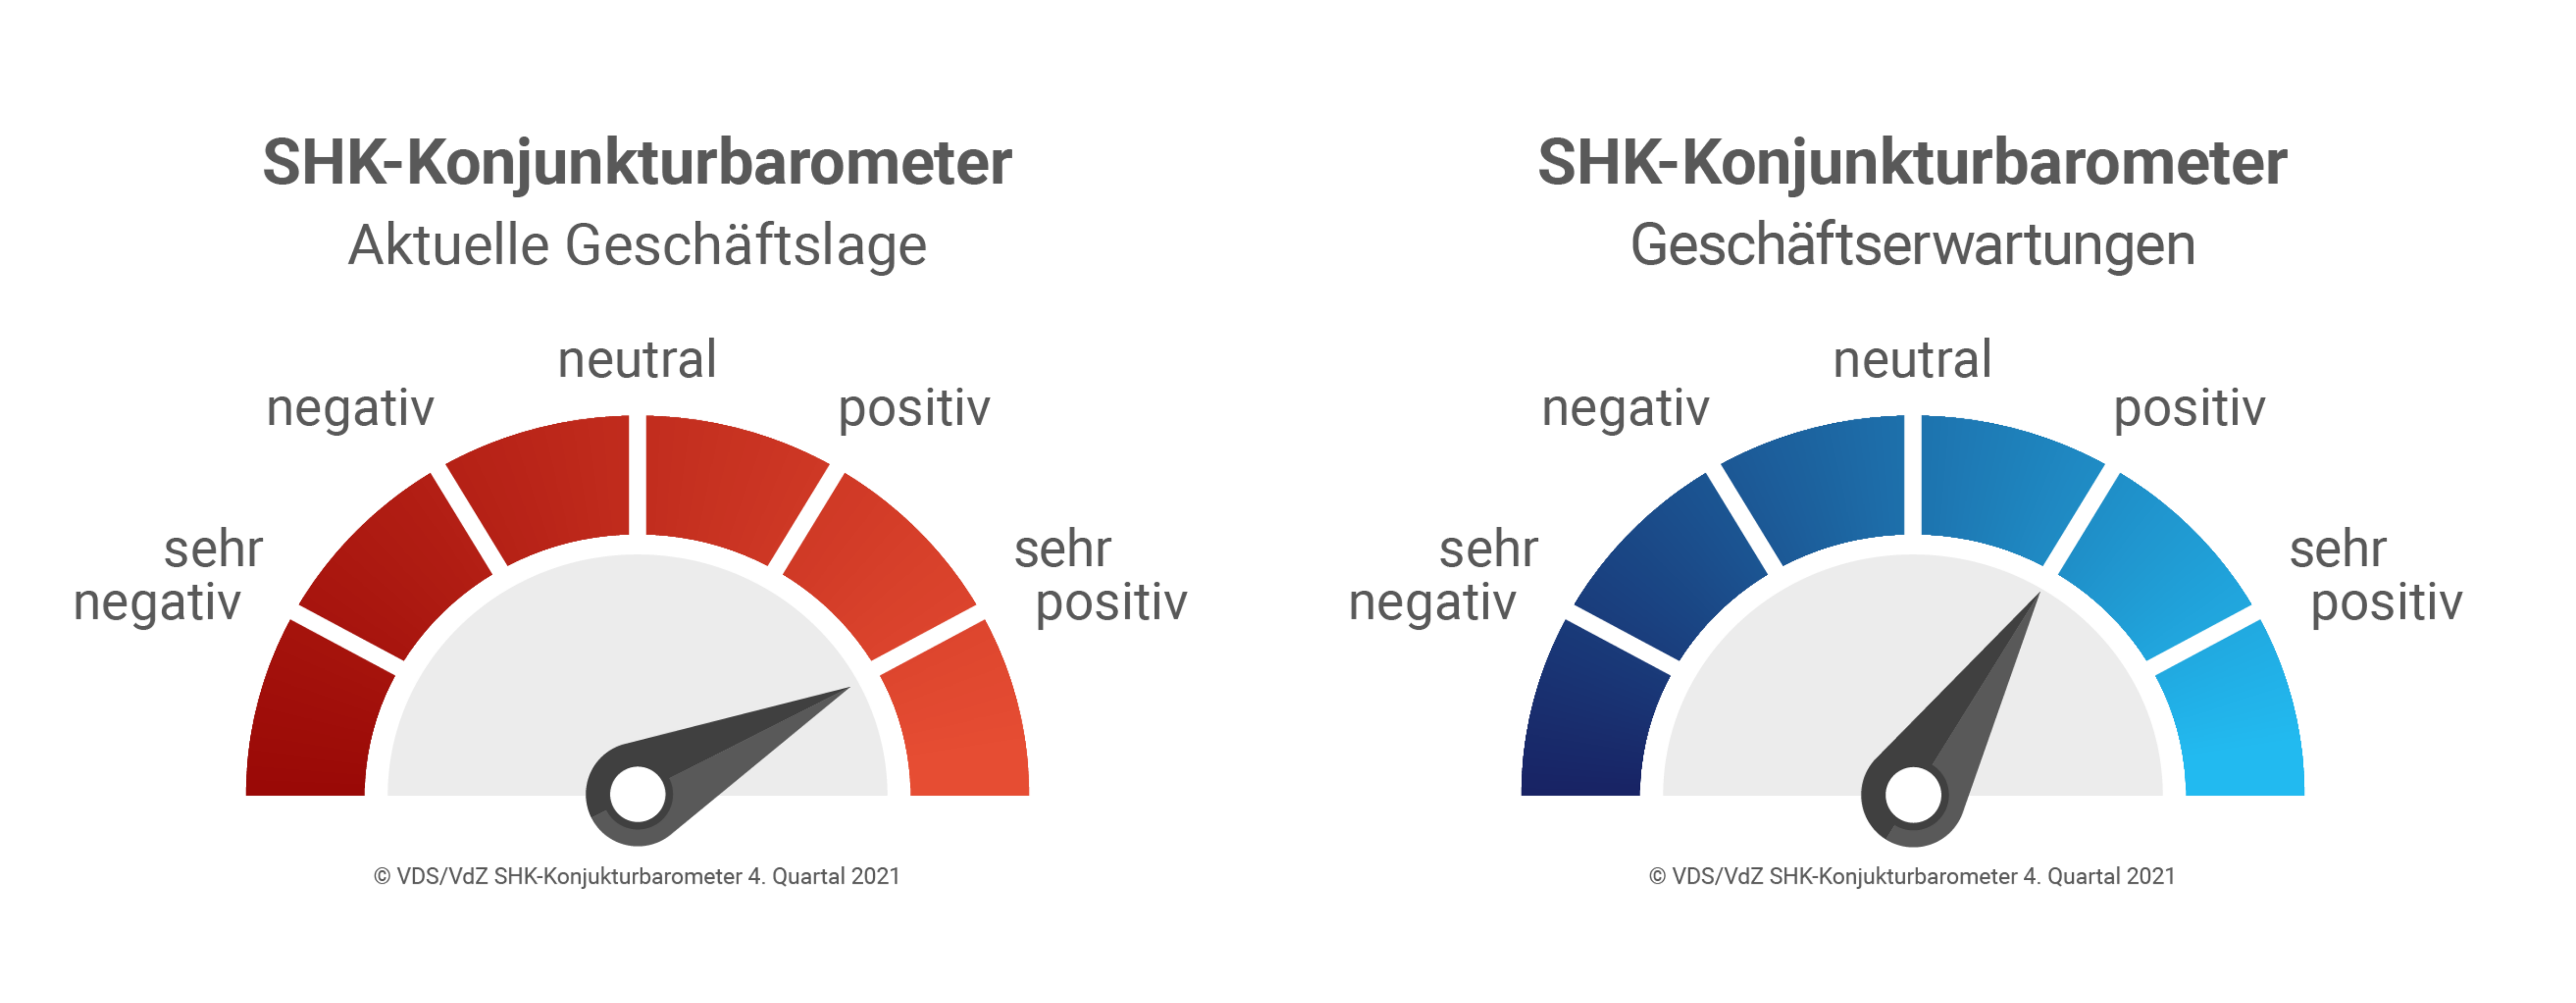 SHK-Konjunkturbarometer